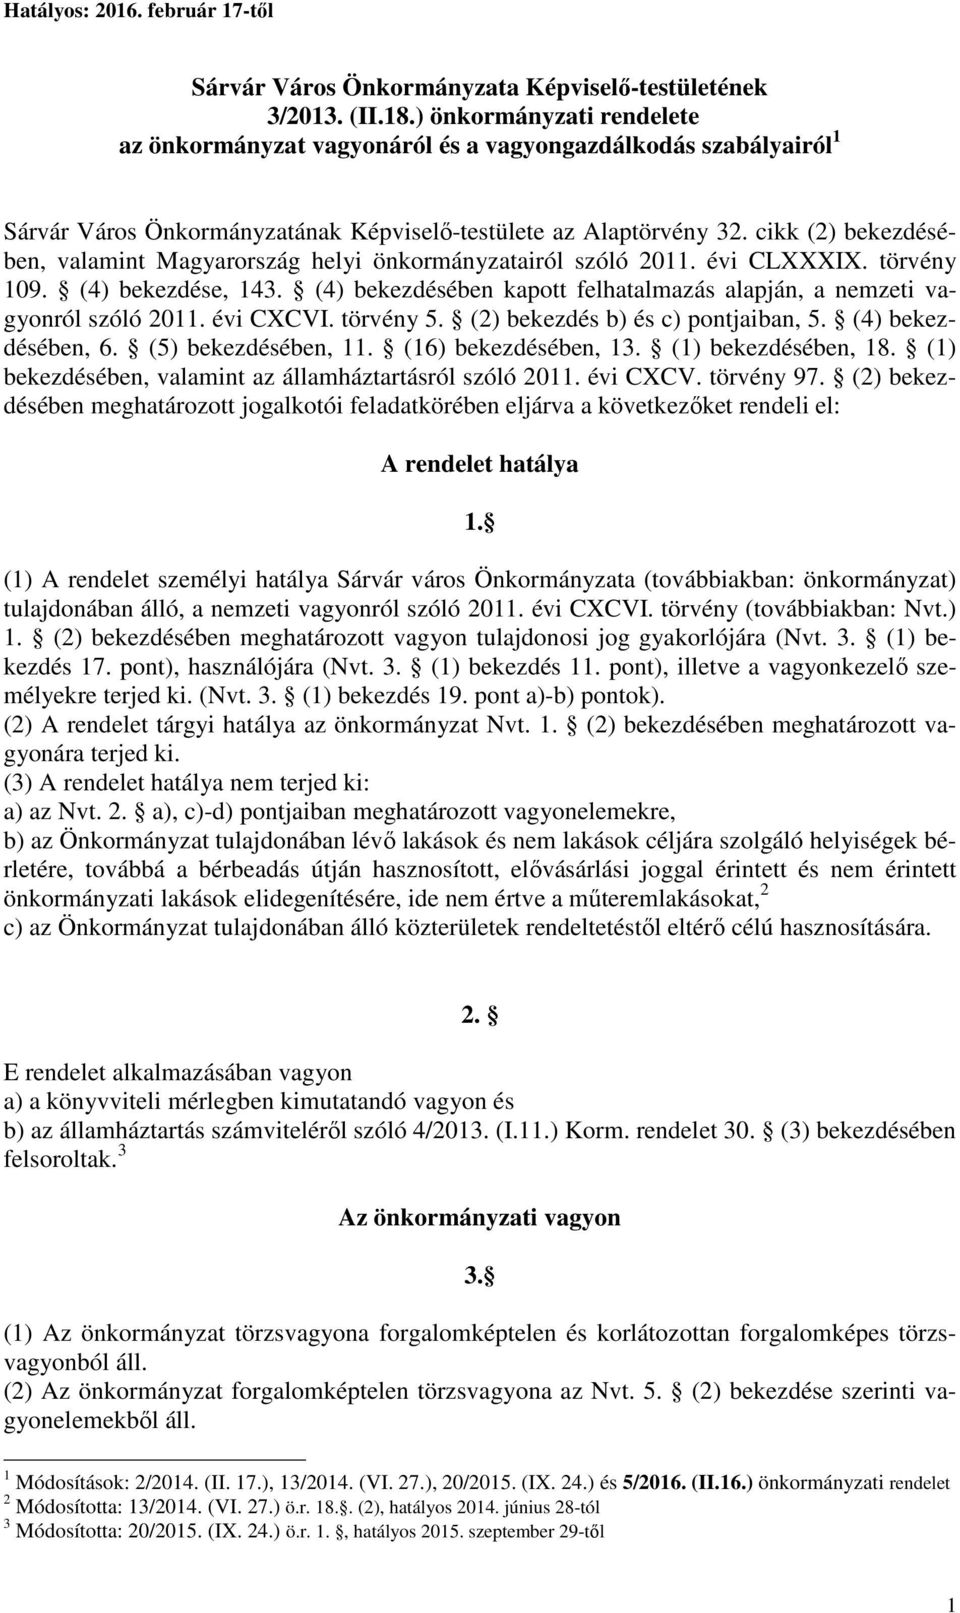 cikk (2) bekezdésében, valamint Magyarország helyi önkormányzatairól szóló 2011. évi CLXXXIX. törvény 109. (4) bekezdése, 143.